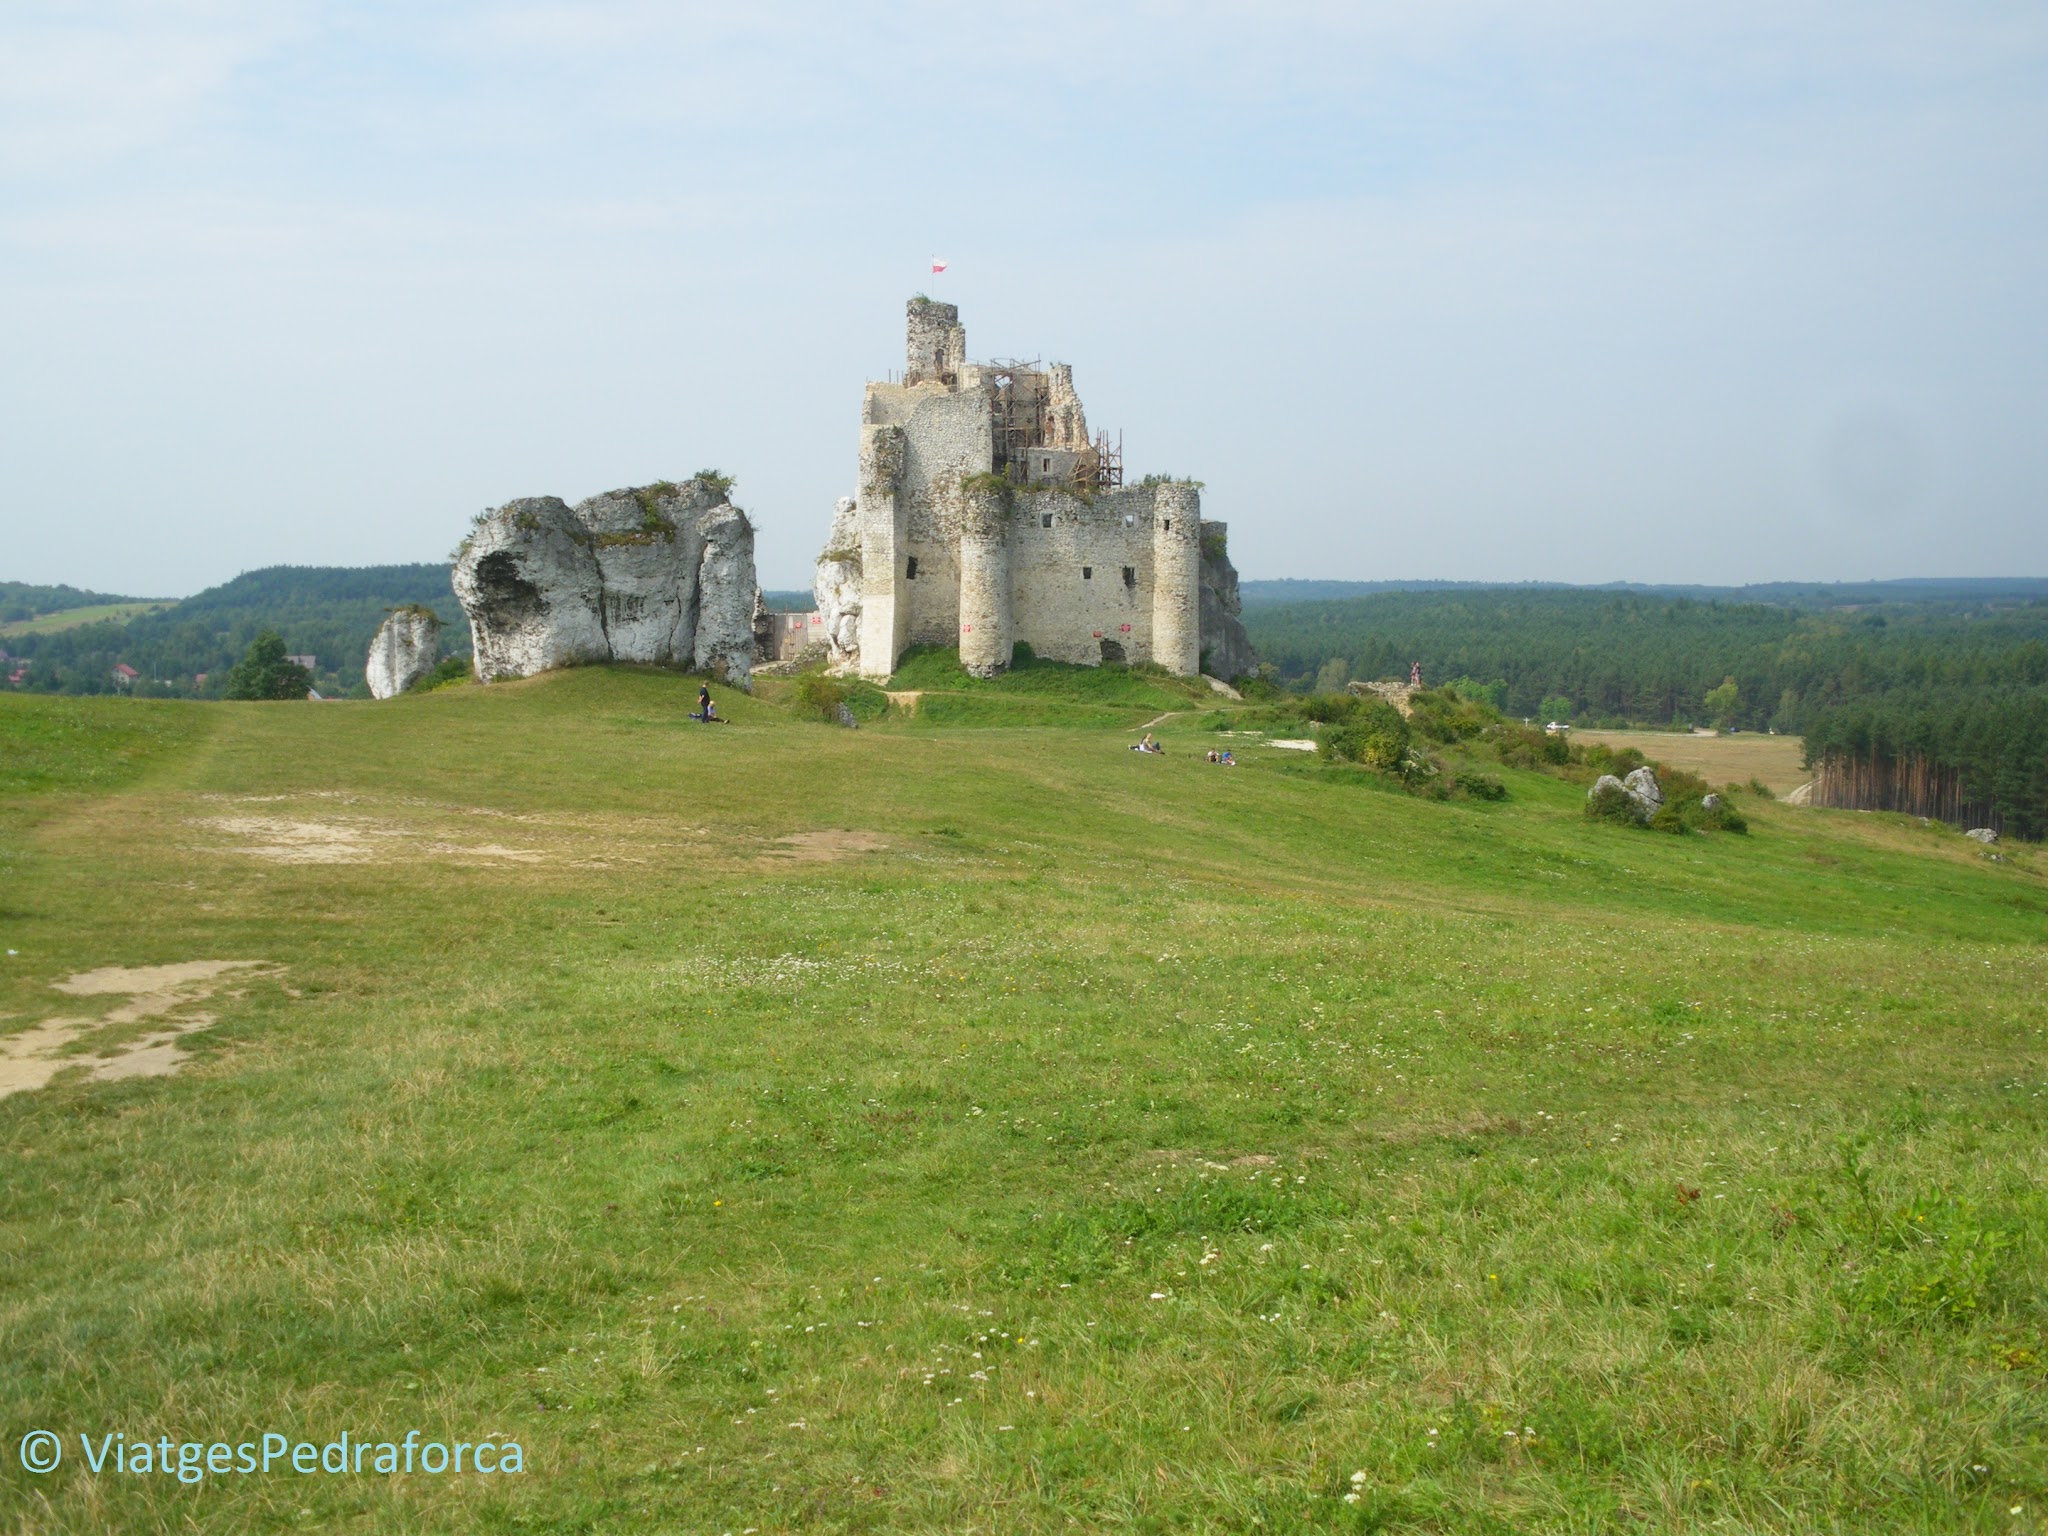 Zamek Mirów, Ruta dels Nius d'Àguila, Polònia medieval, castells medievals